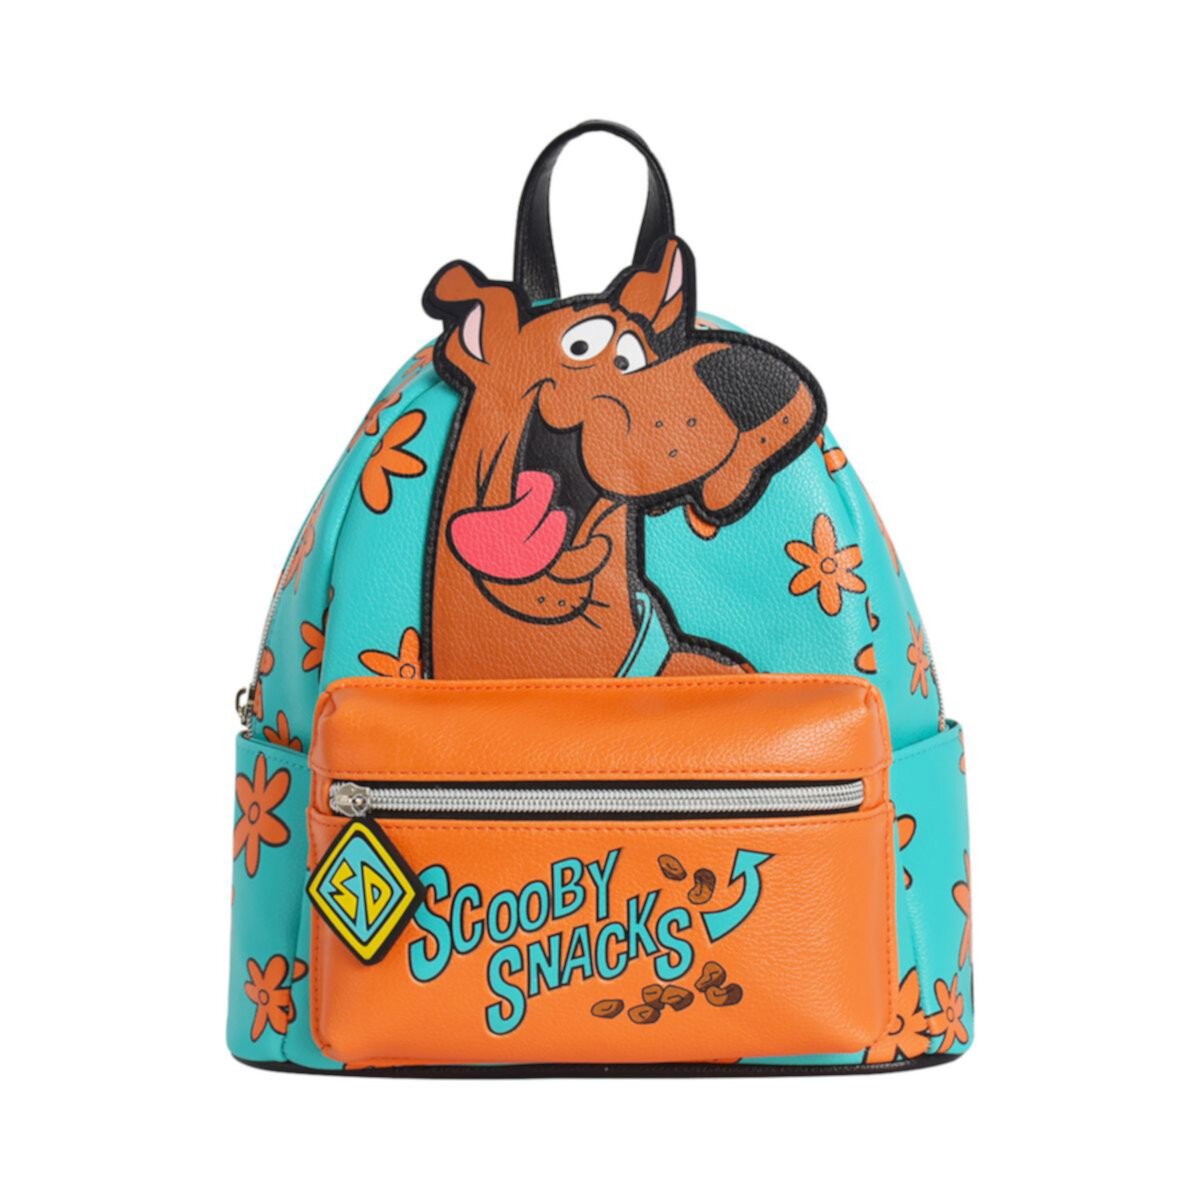 Мини-рюкзак Scooby-Doo Scooby Snacks Unbranded